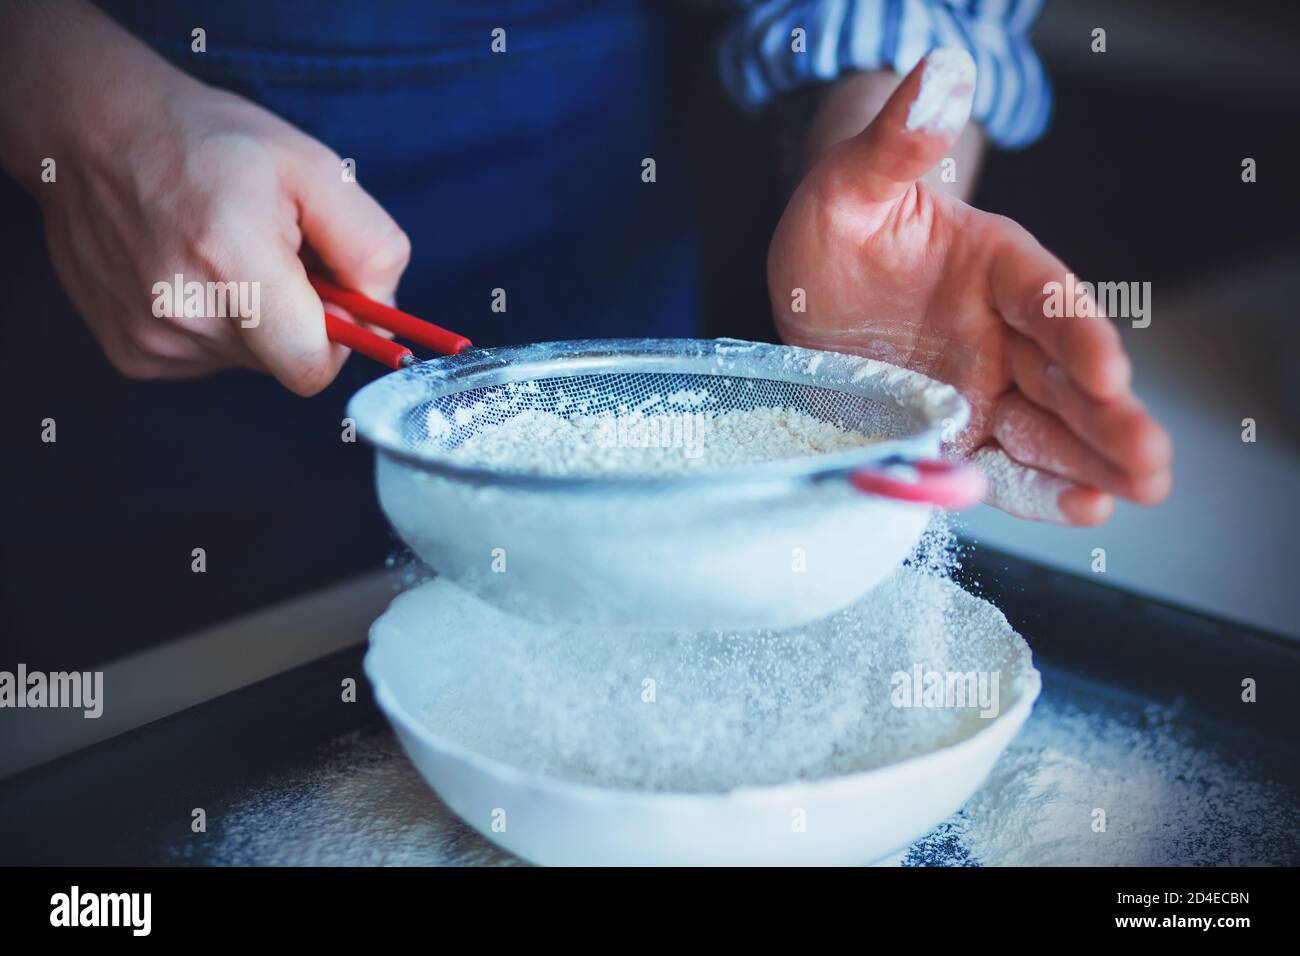 Uno chef in grembiule blu e camicia a righe tiene un setaccio rosso e lo utilizza per setacciare la farina schiacciata in un recipiente bianco. Cucina casalinga. Foto Stock